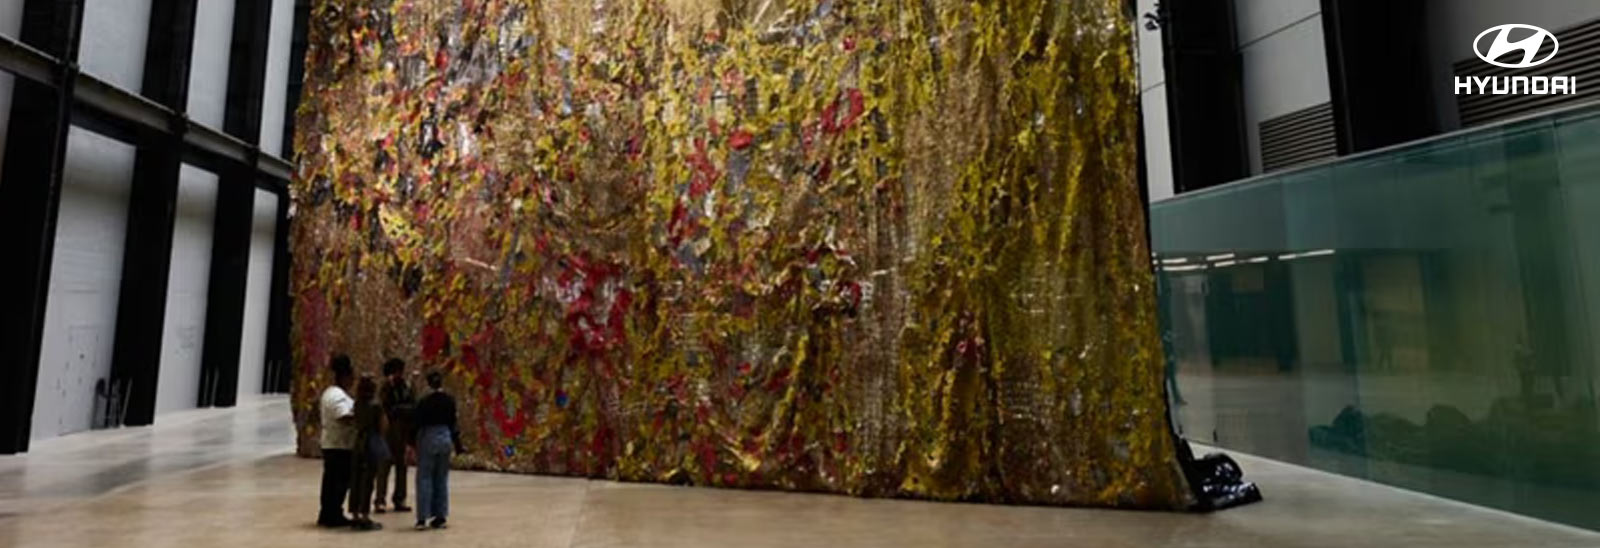 Pieza de arte dentro de la exposición 'El Anatsui: Detrás de la Luna Roja' inaugurada por Hyundai y el Tate Modern